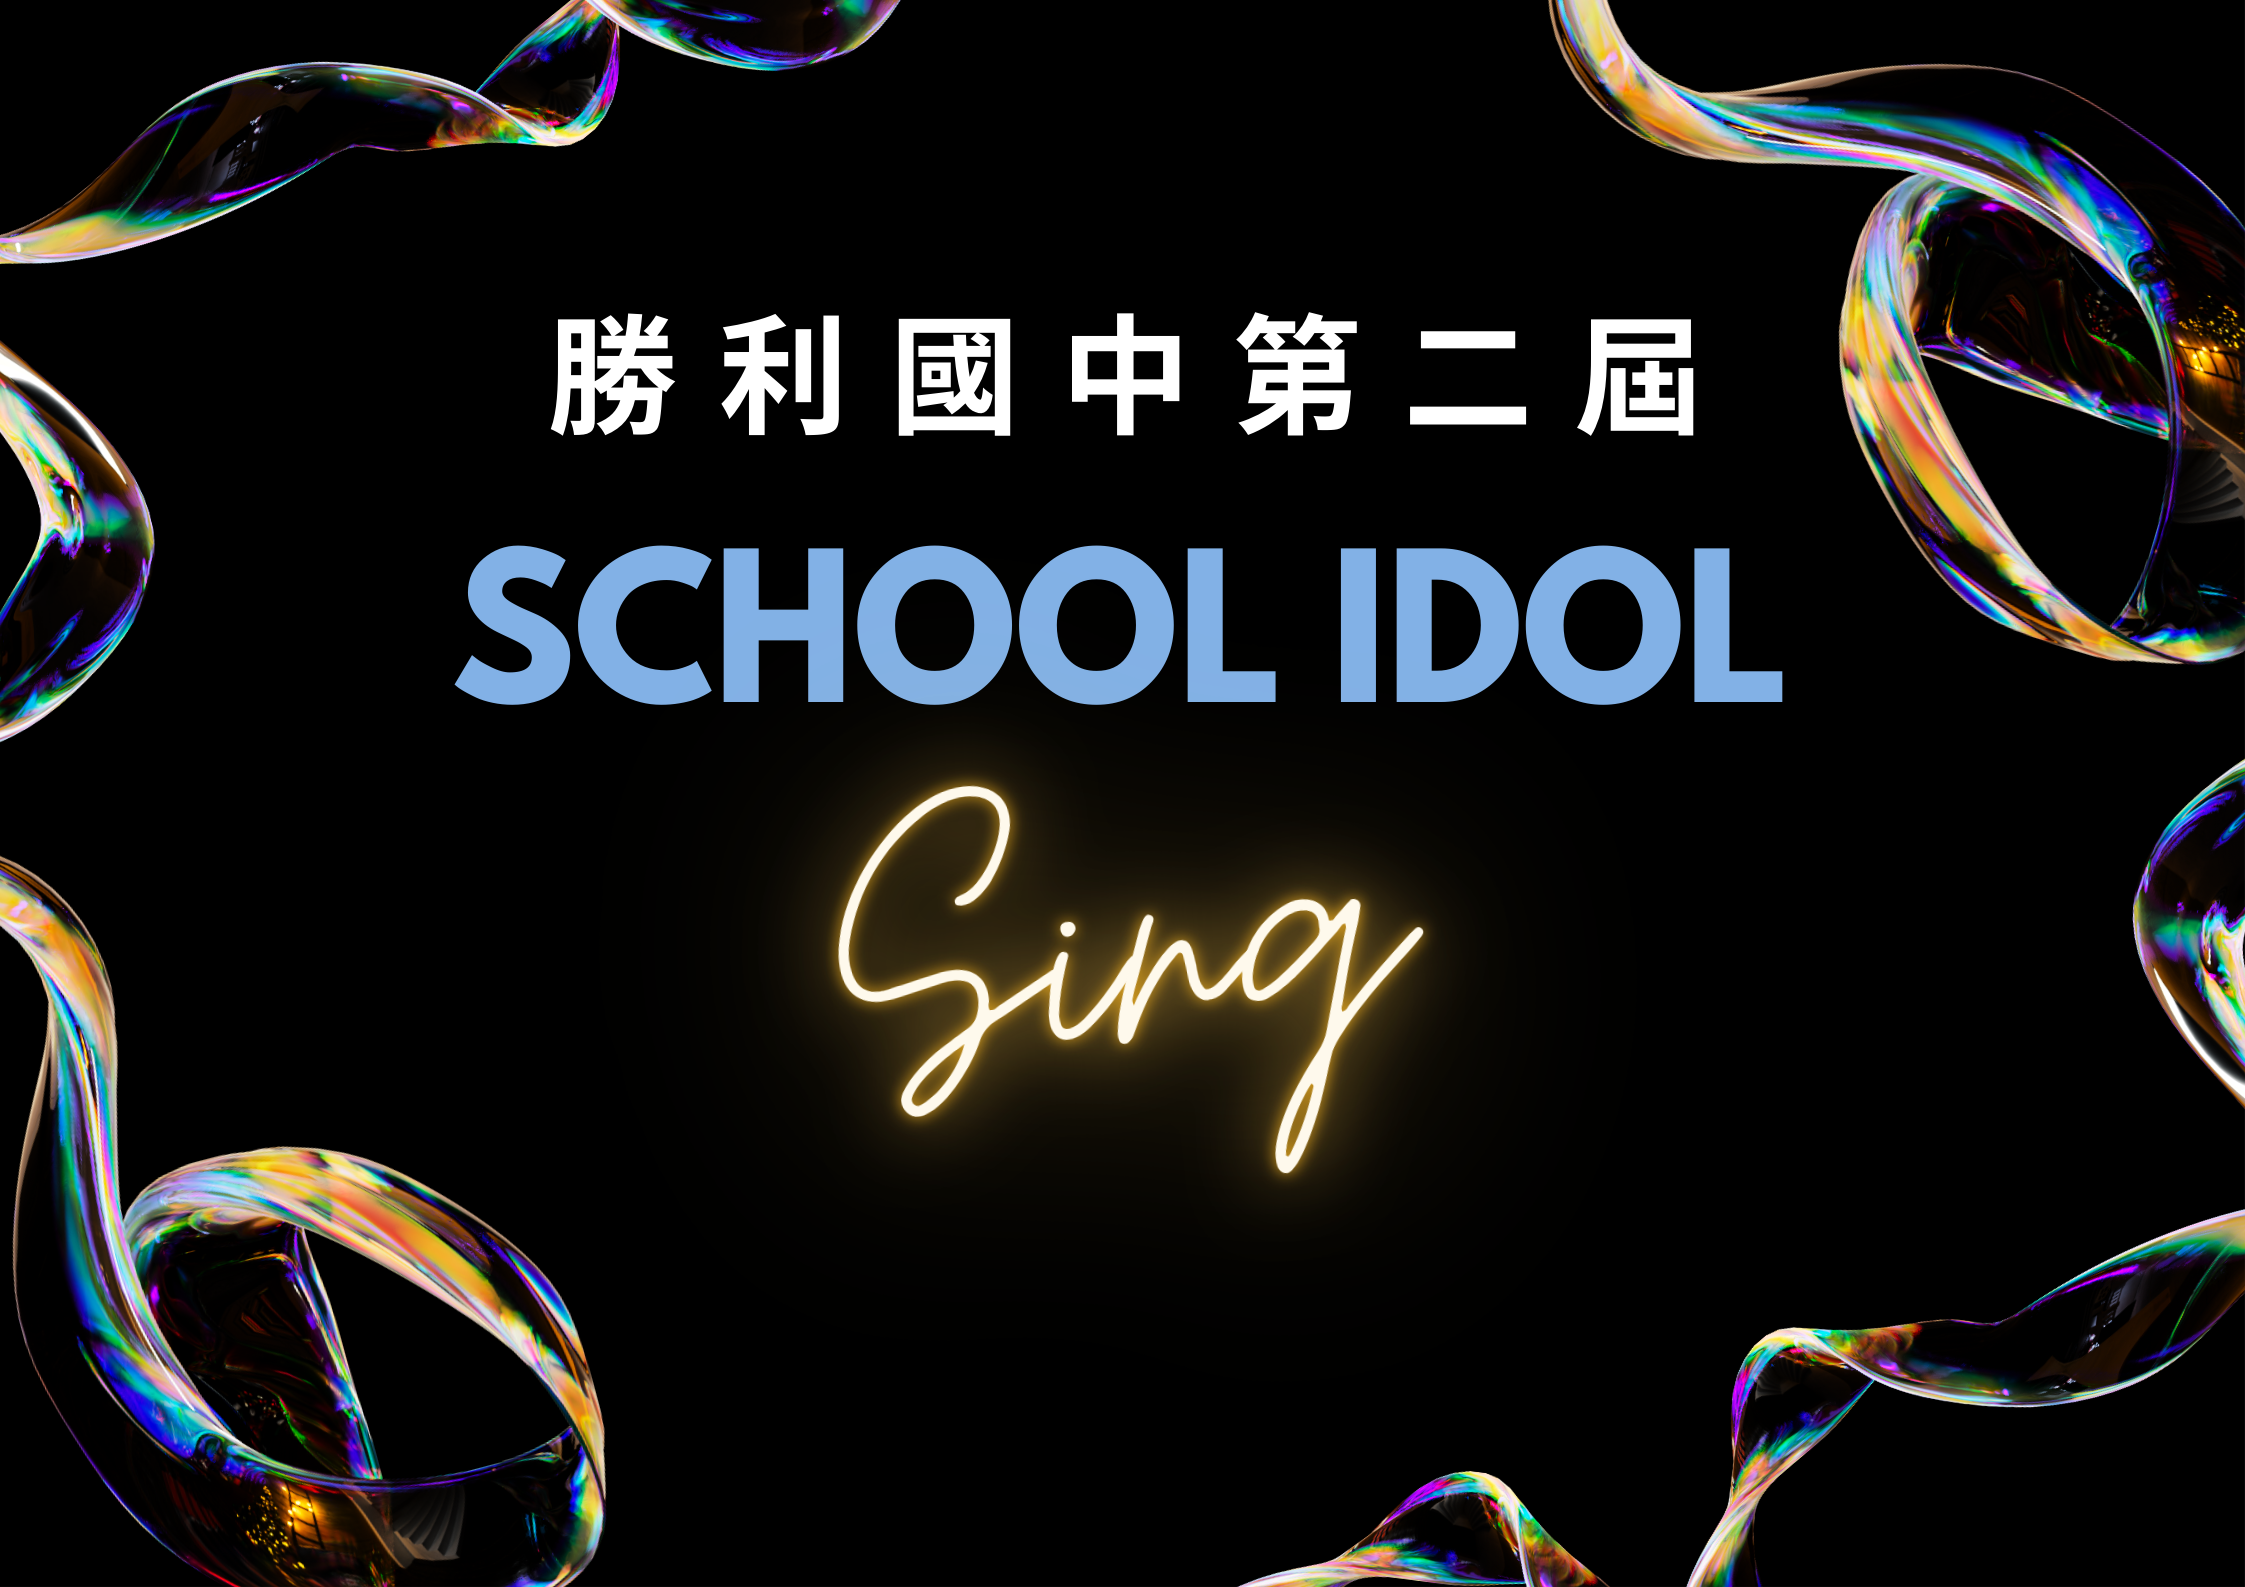 第二屆school idol歌唱比賽